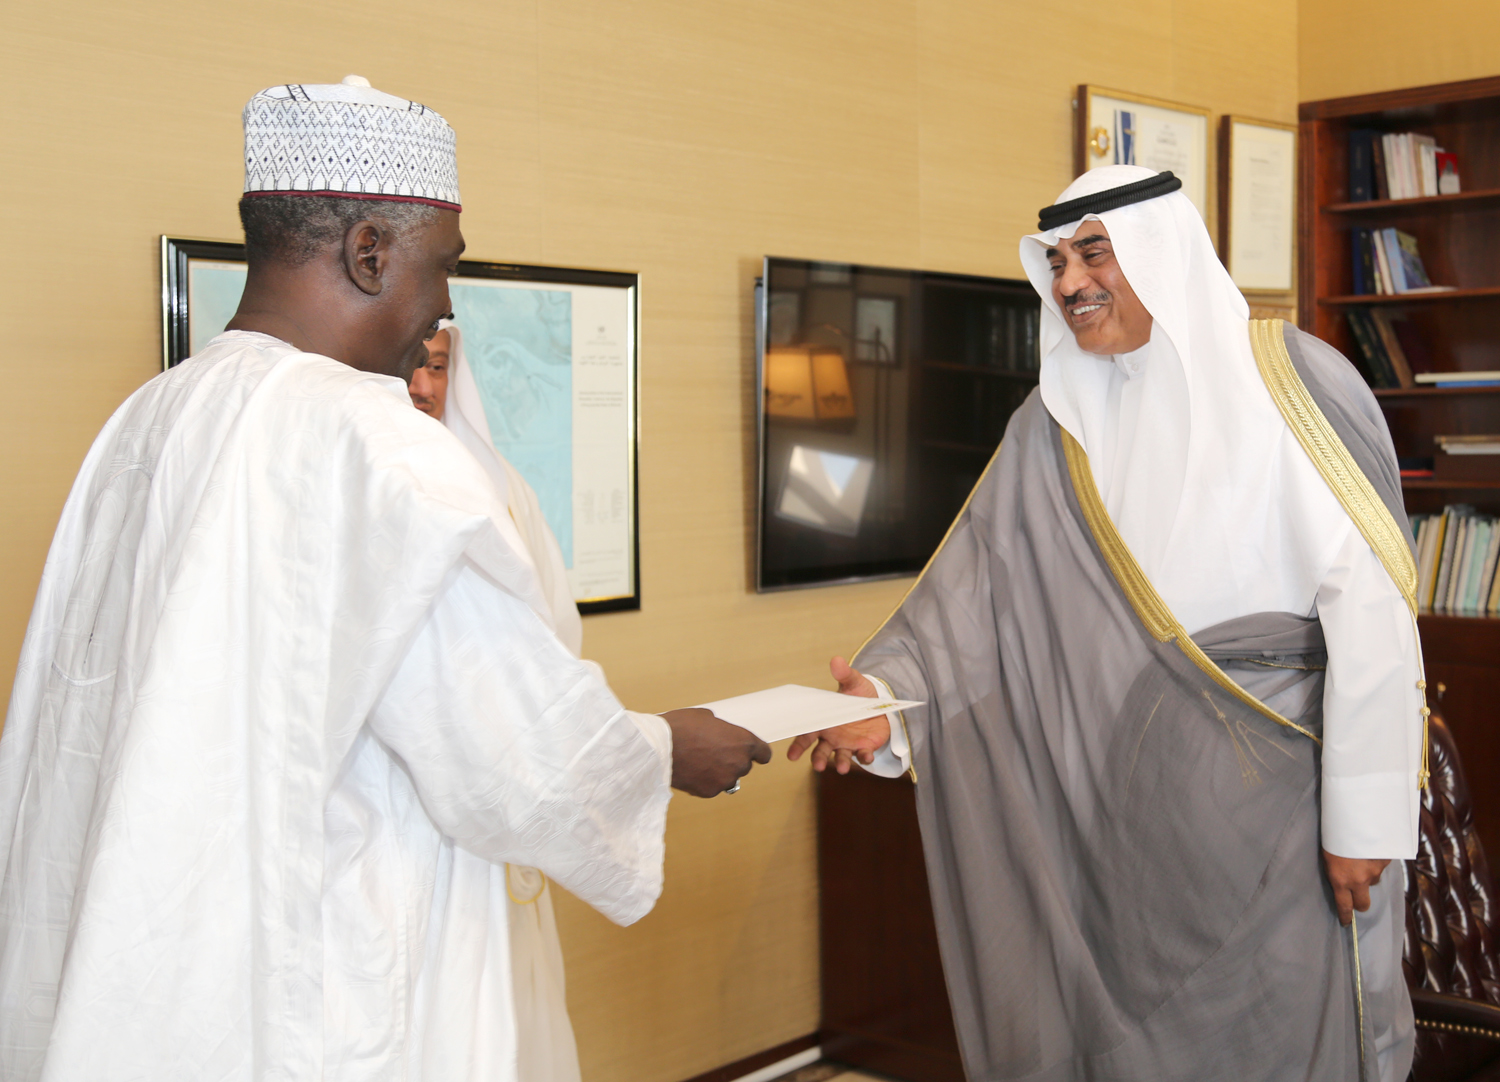 Acting Prime Minister and Foreign Minister Sheikh Sabah Al-Khaled Al-Hamad Al-Sabah receives credentials of new Niger's ambassador